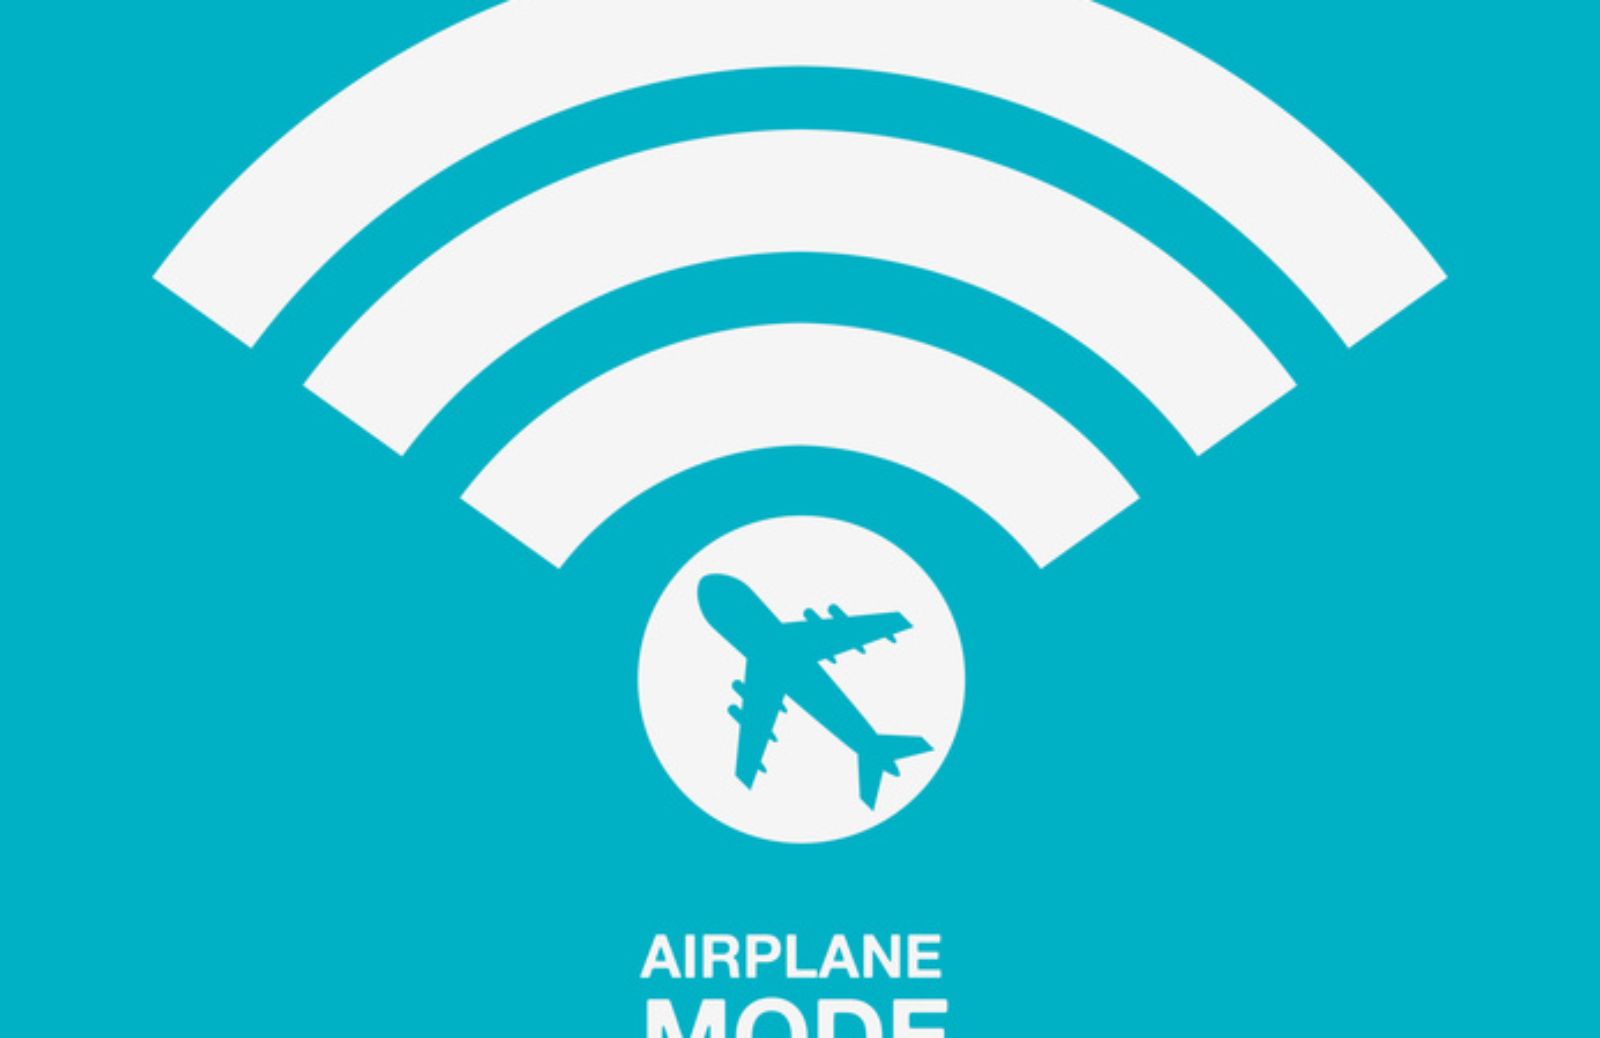 E' pericoloso tenere il cellulare acceso in aereo?